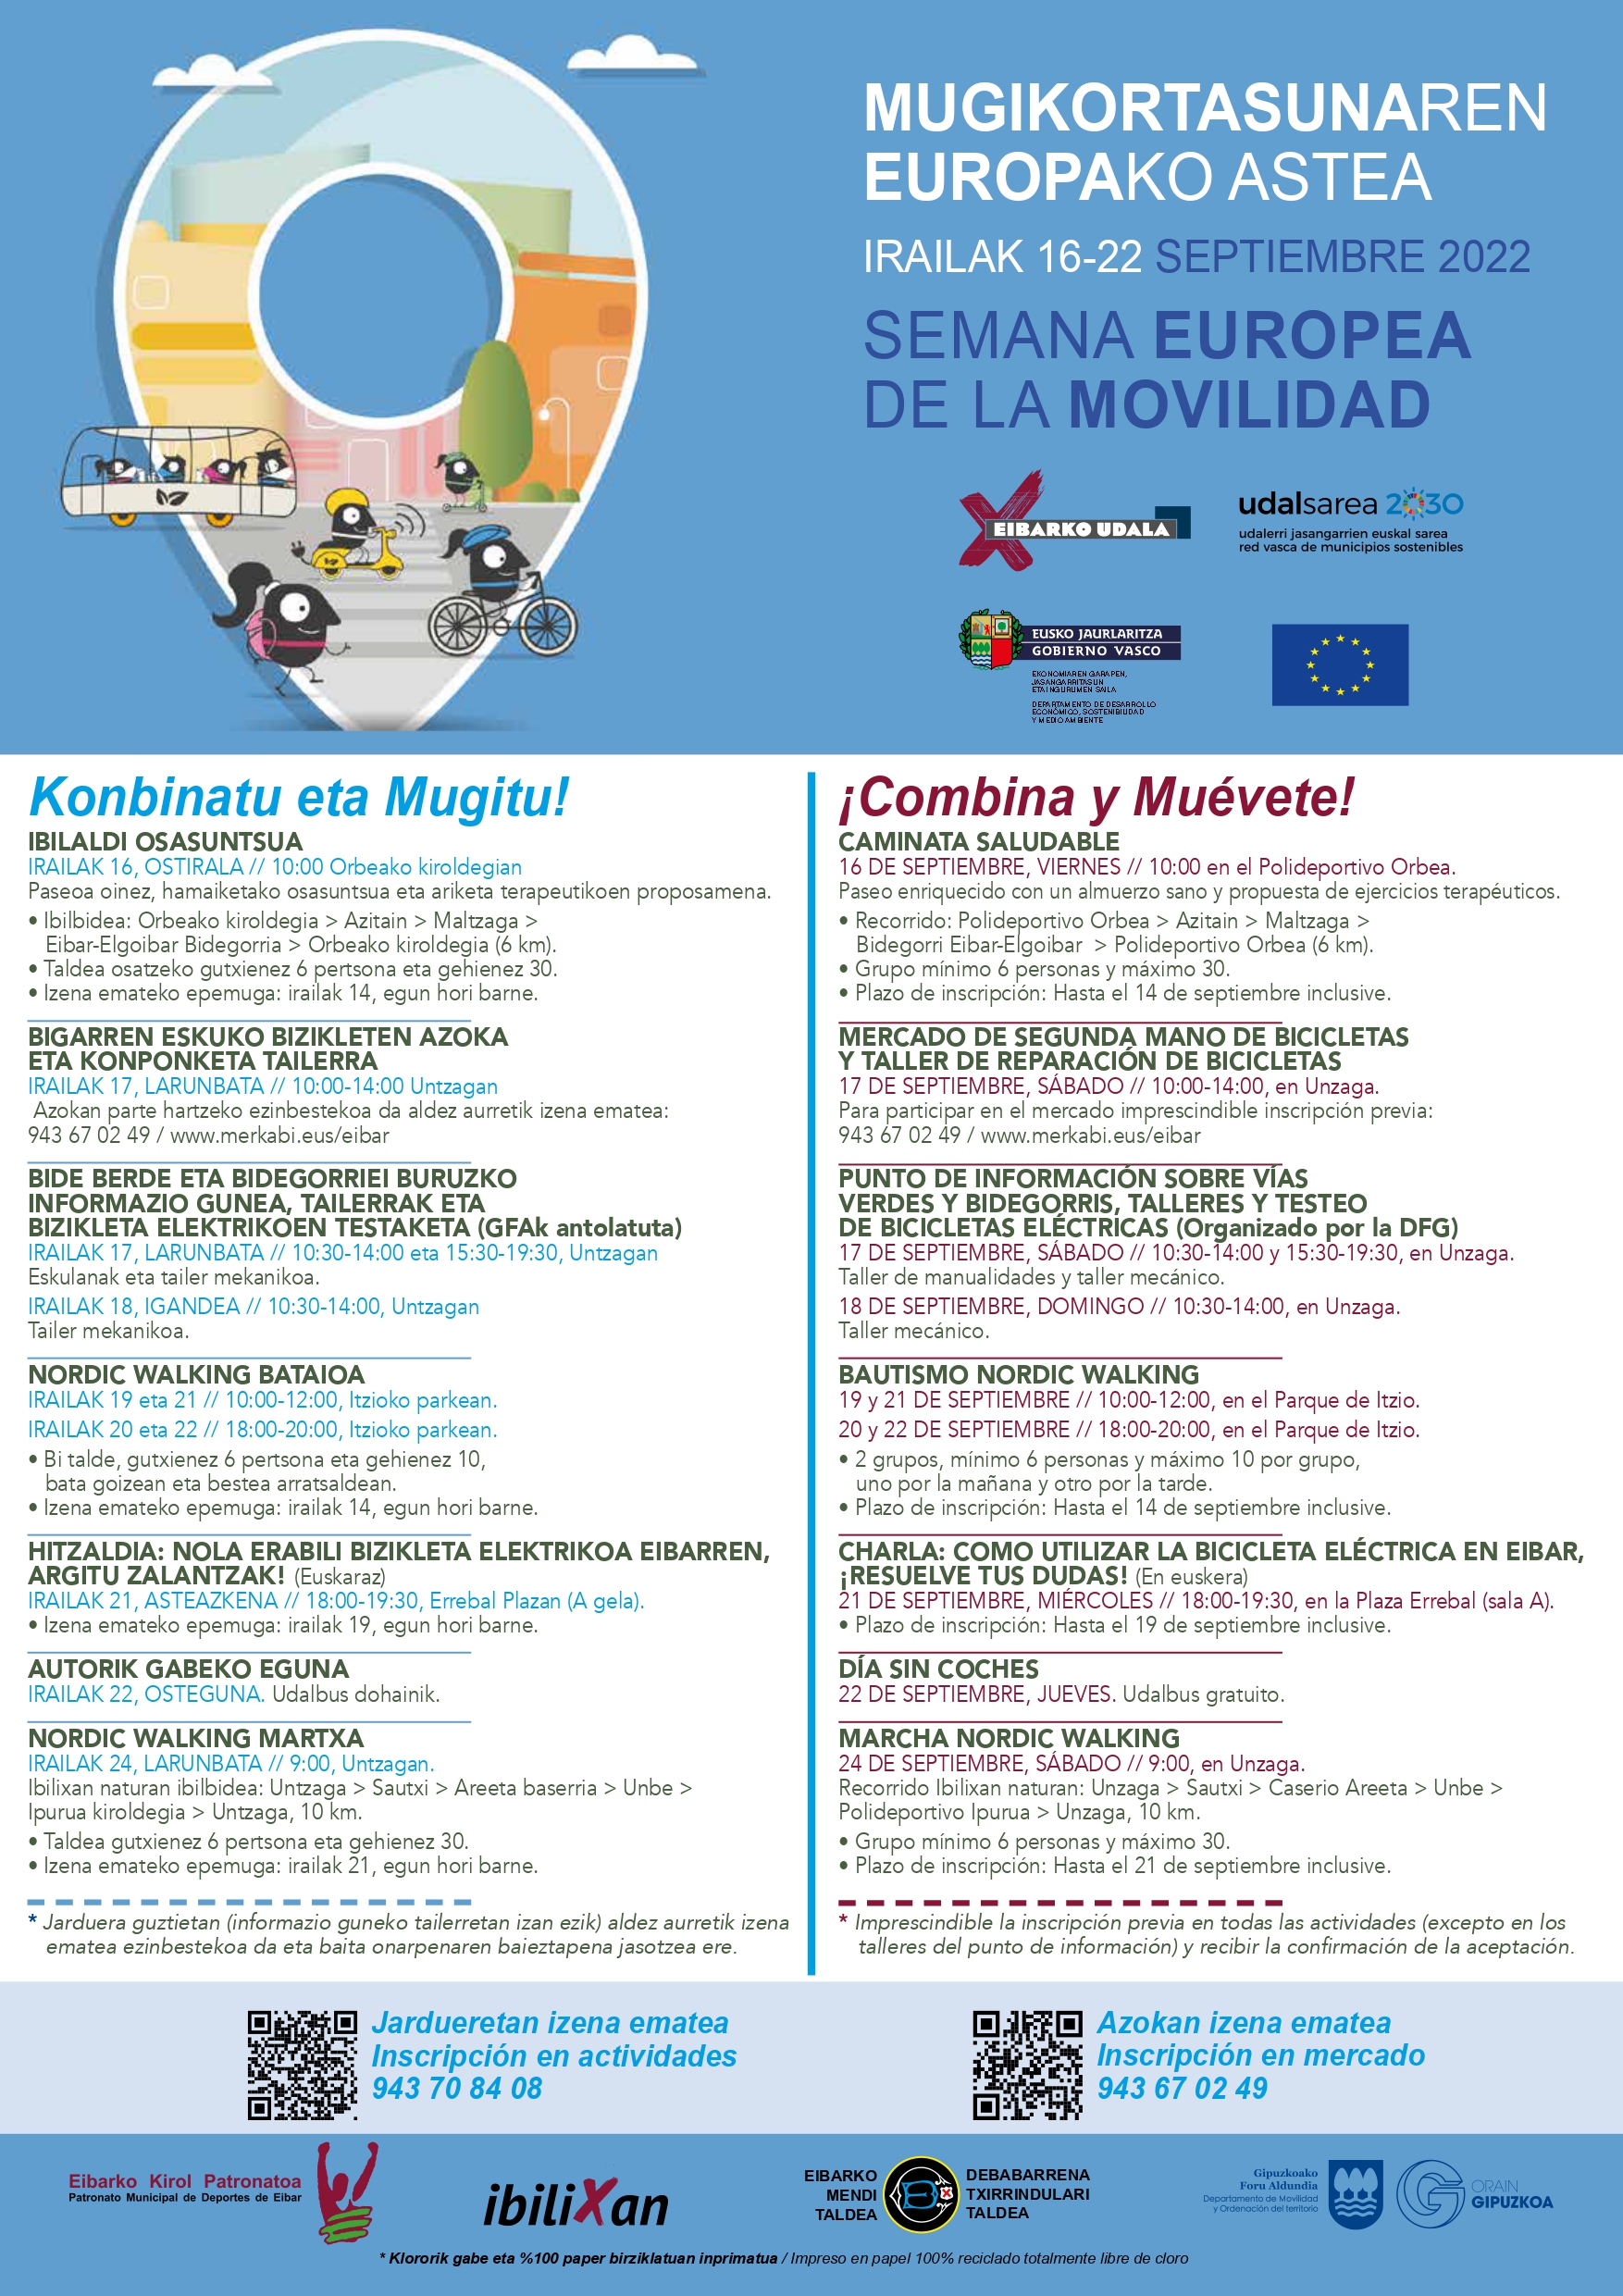 Eibar celebrará este mes una nueva edición de la Semana Europea de la Movilidad, con variadas actividades